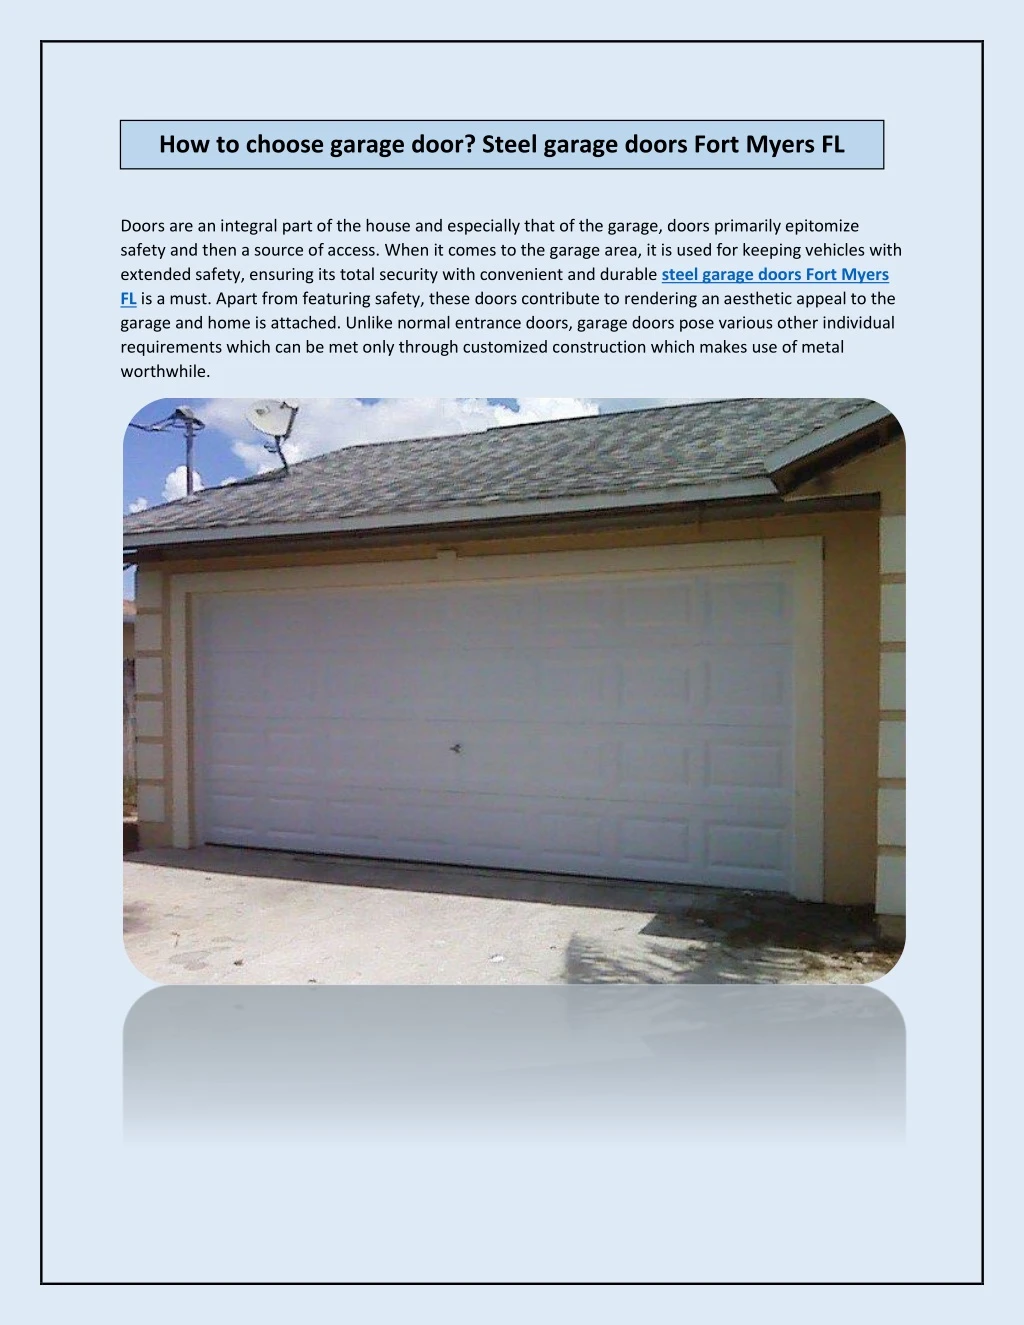 how to choose garage door steel garage doors fort